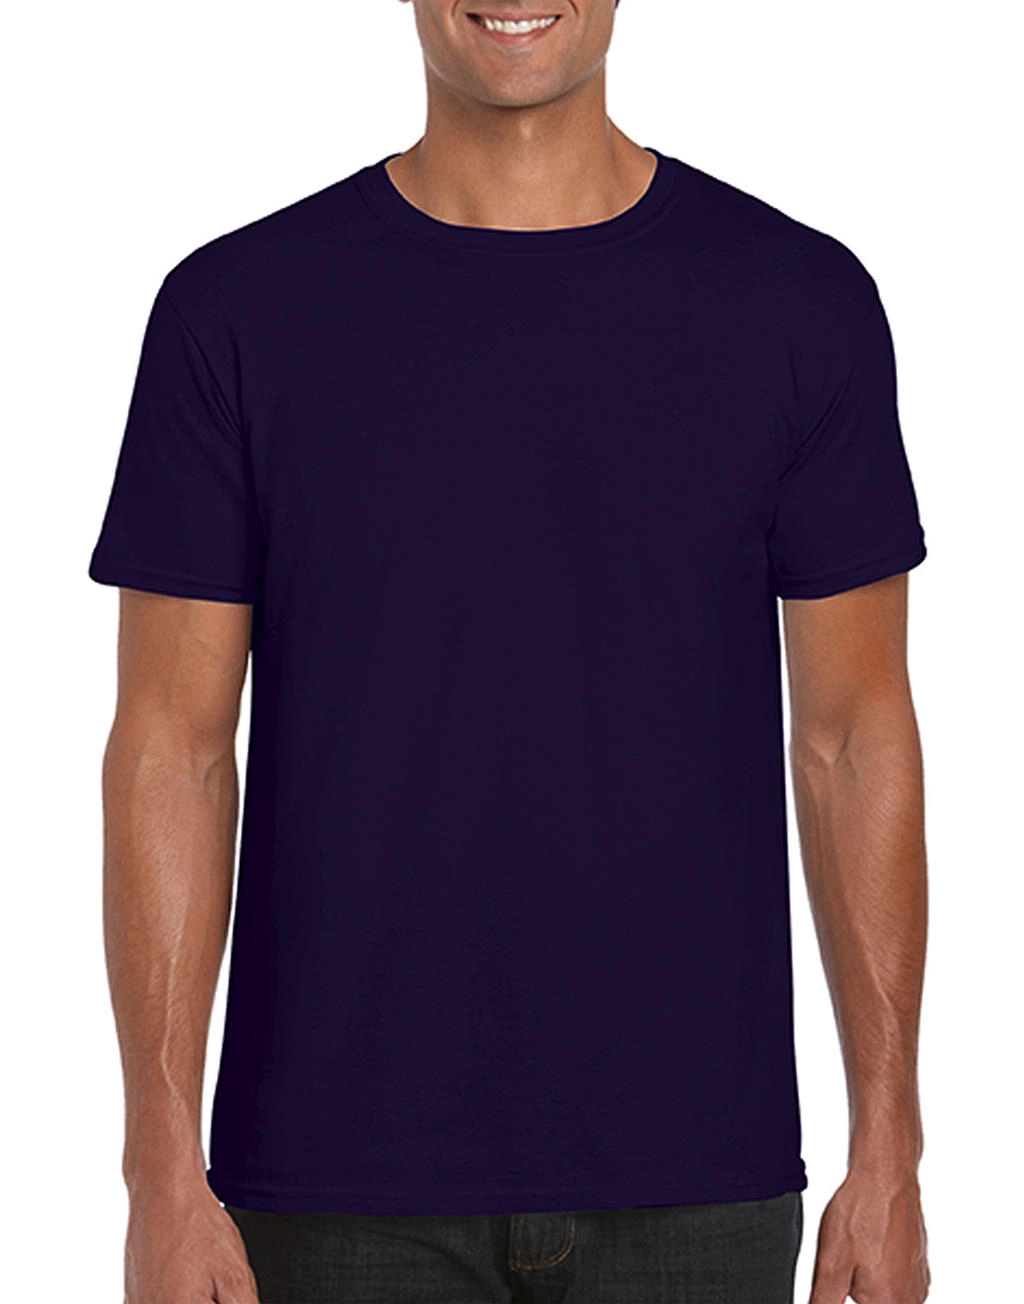 Softstyle® Ring Spun T-Shirt zum Besticken und Bedrucken in der Farbe Blackberry mit Ihren Logo, Schriftzug oder Motiv.